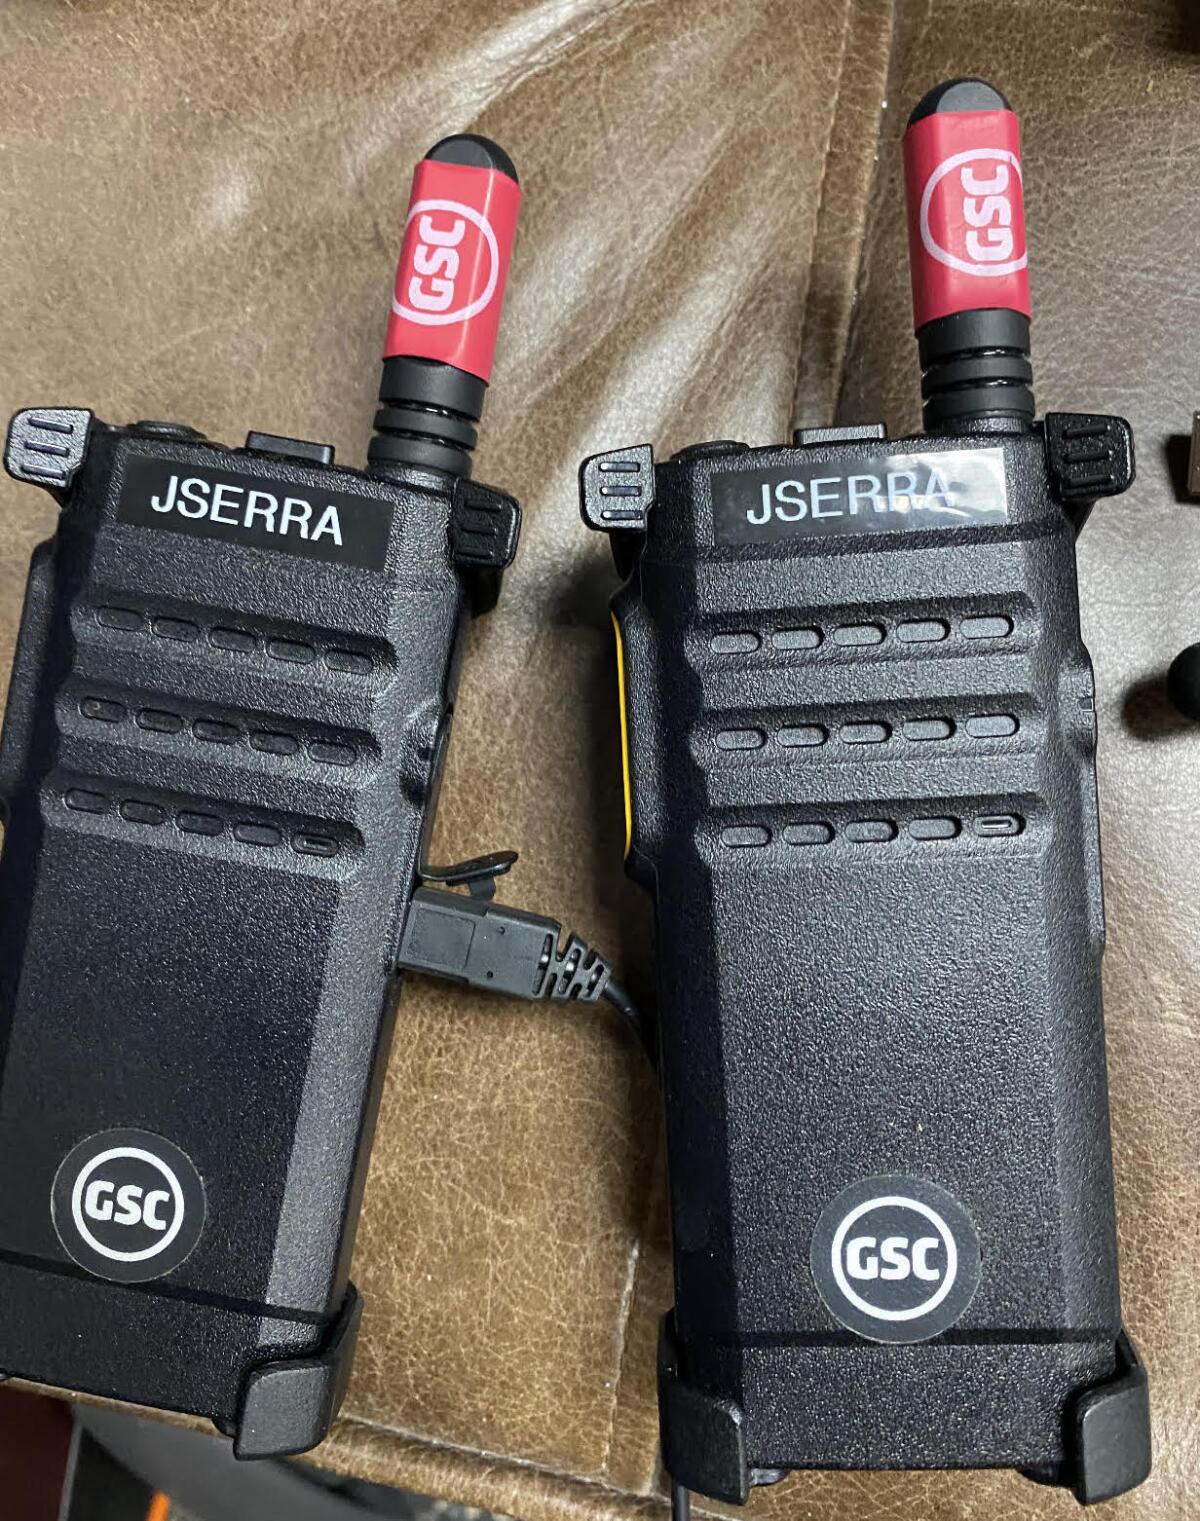 Two JSerra walkie-talkies